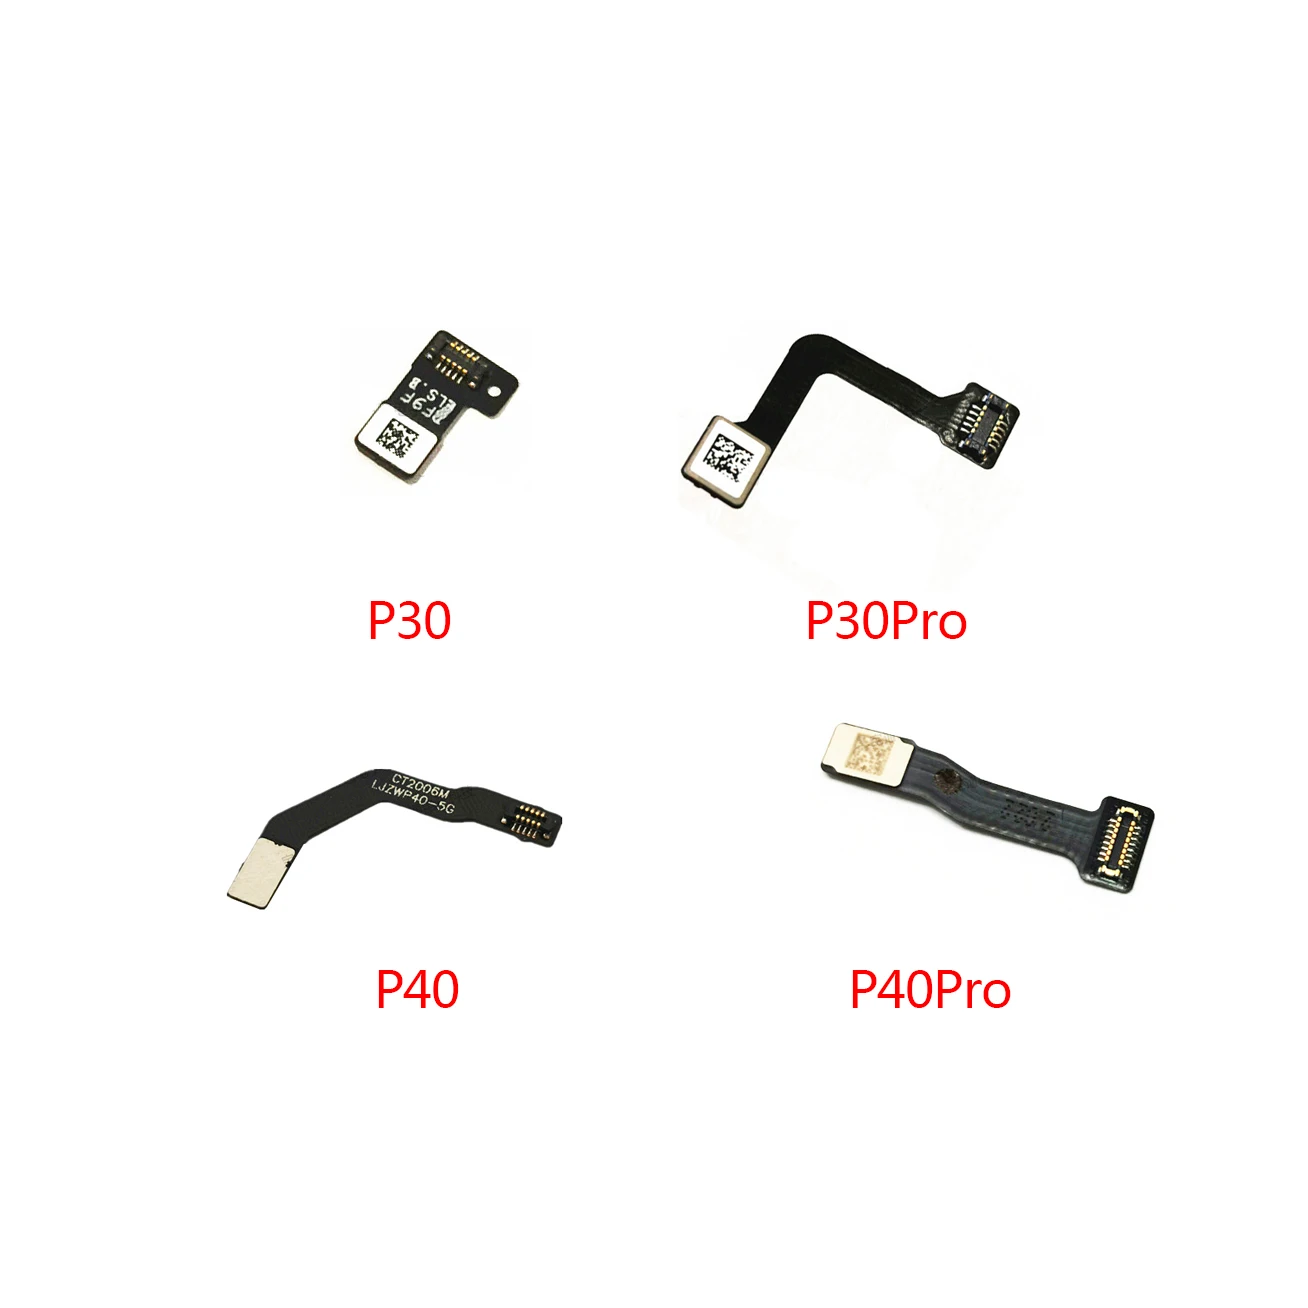 

Home Button Fingerprint Touch Id Sensor Connector Flex Cable For Huawei P20Pro P30 P30Pro P40 P40Pro